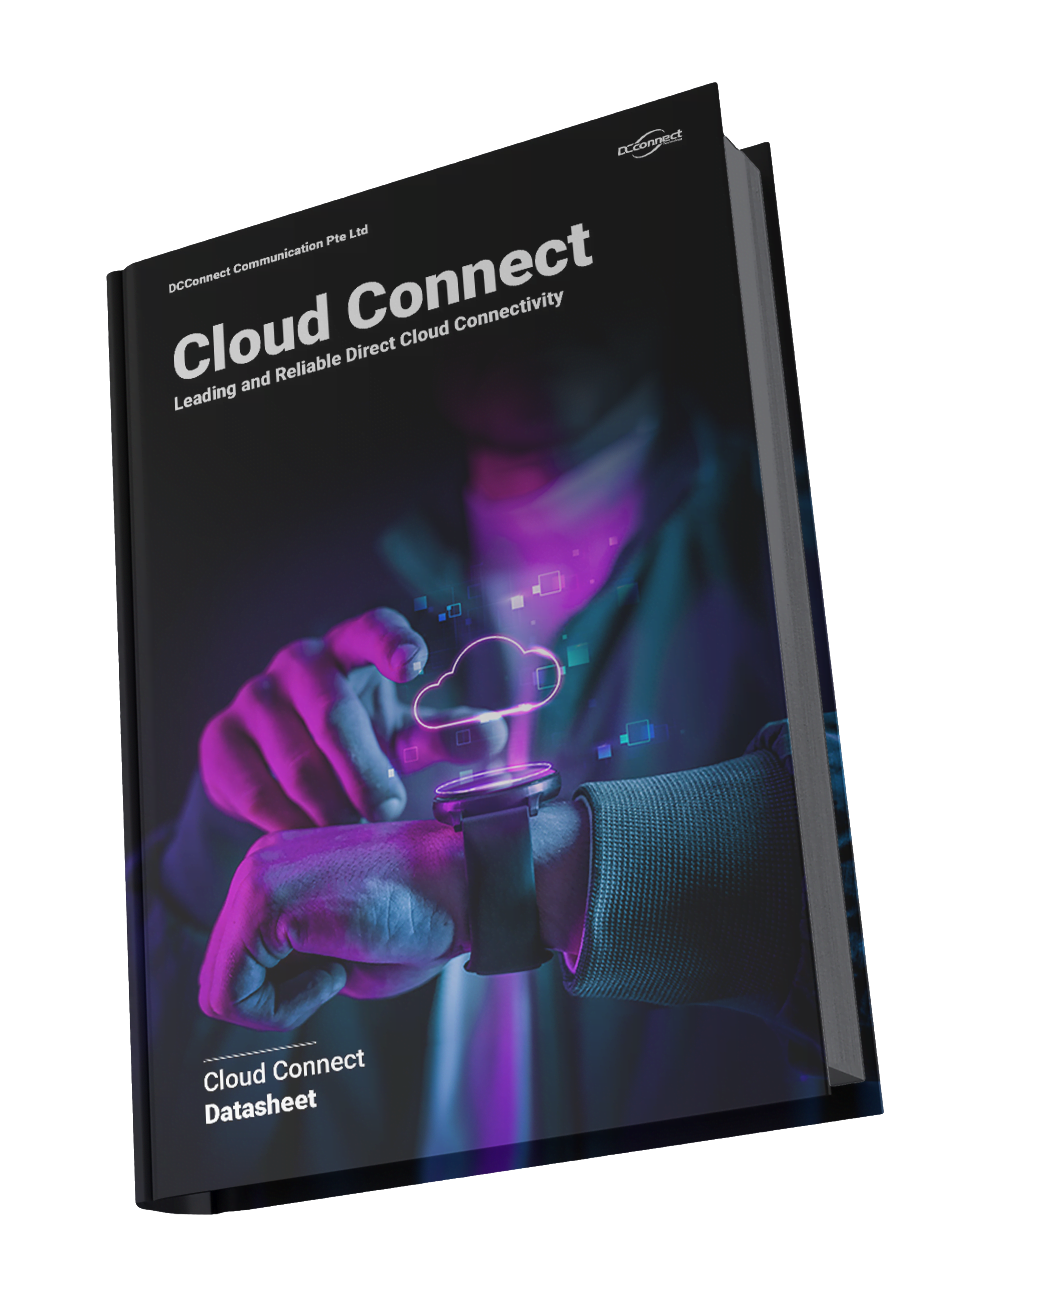 Cloud Connect